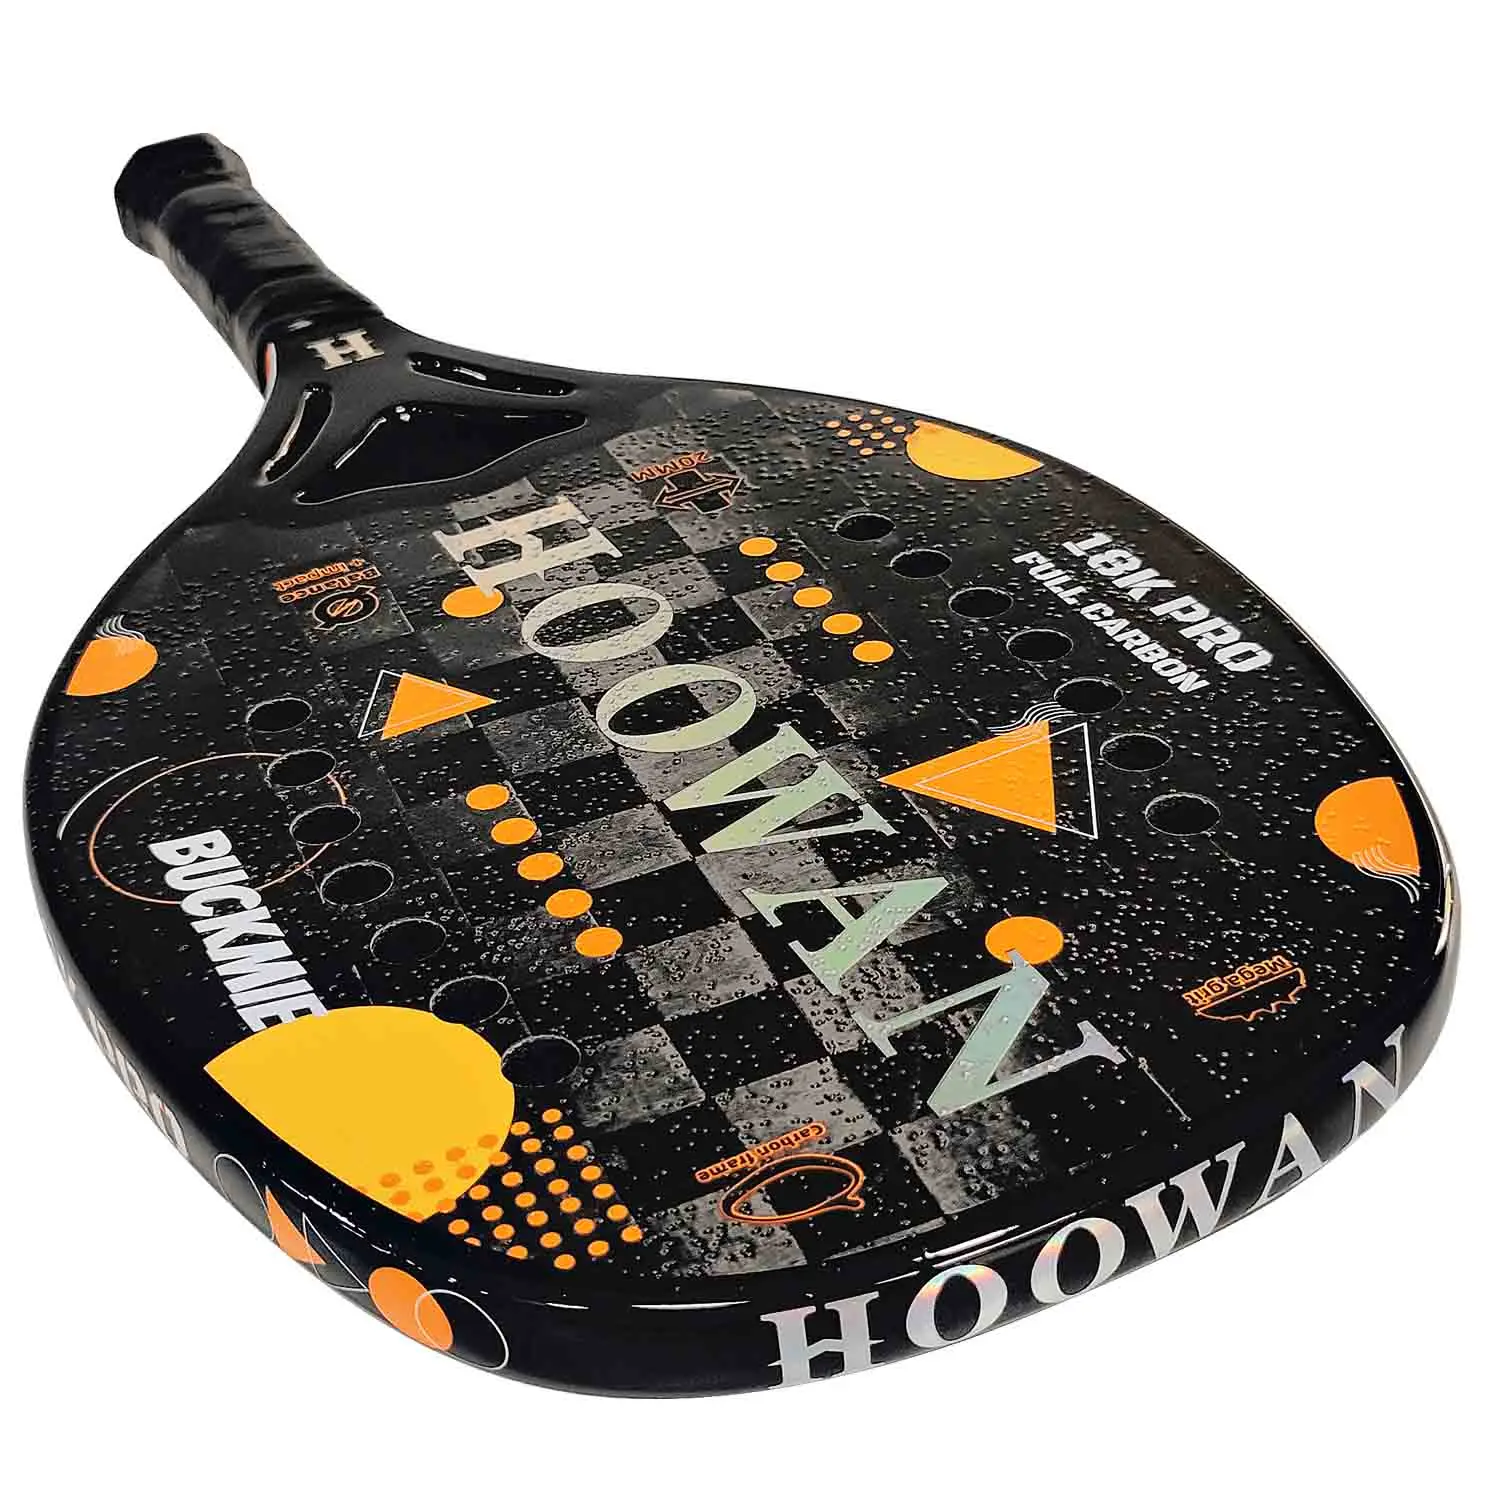 HOOWAN Buckmie 18K Pro Beach Tennis Racket Carbon Fiber 18K Brand New Beach Tennis Paddle for Advanced Offensive 20mm images - 6